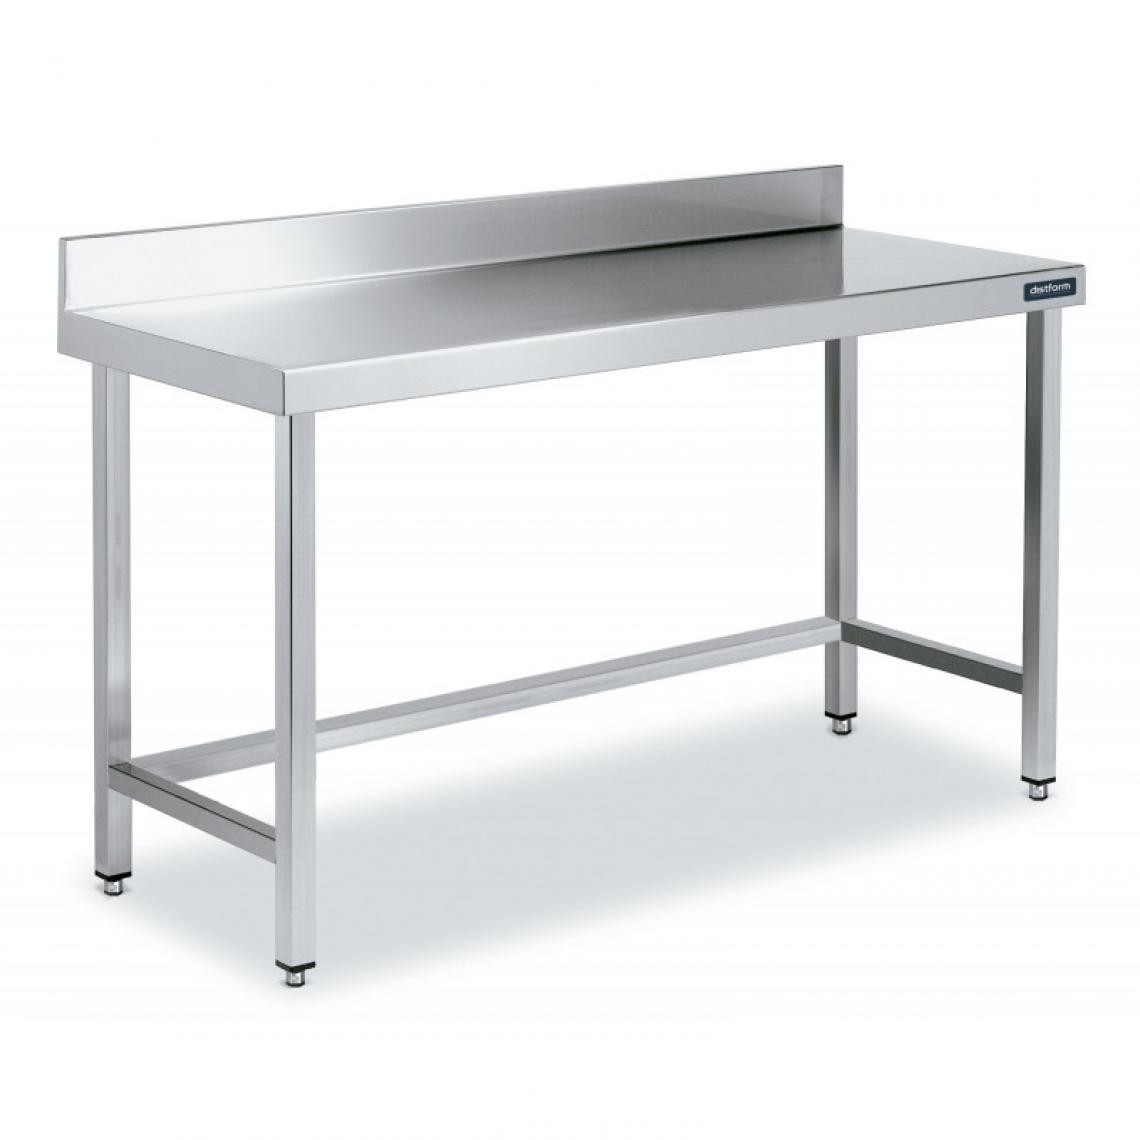 DISTFORM - Table Inox de Travail avec Dosseret Gamme 800 - Distform - Acier inoxydable2800x800 - Tables à manger